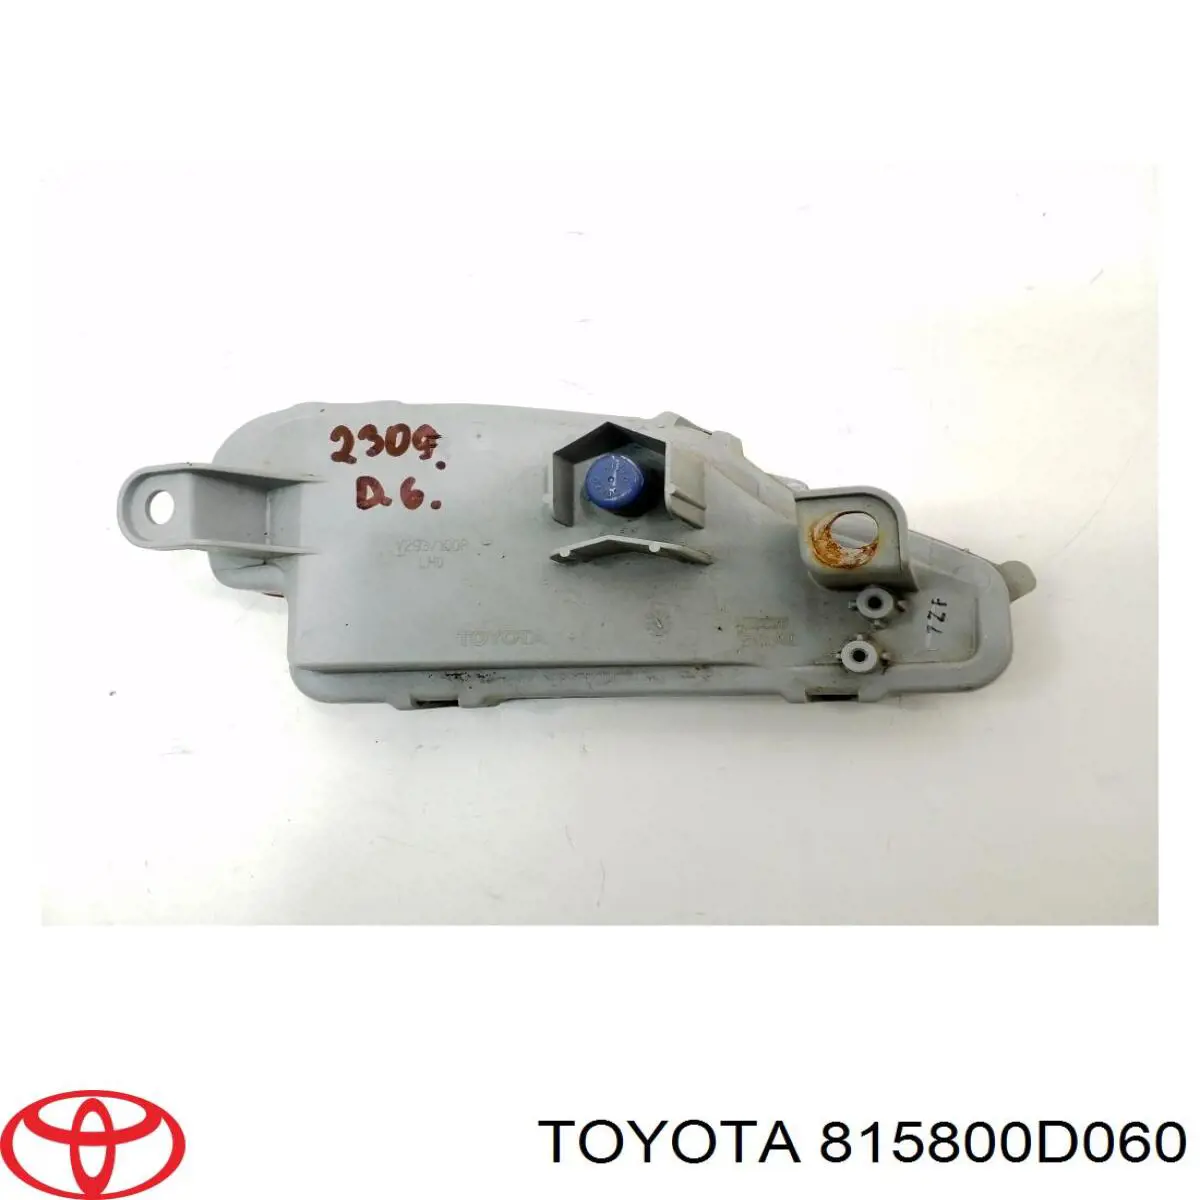 Retrorrefletor (refletor) do pára-choque traseiro direito para Toyota Yaris (P13)